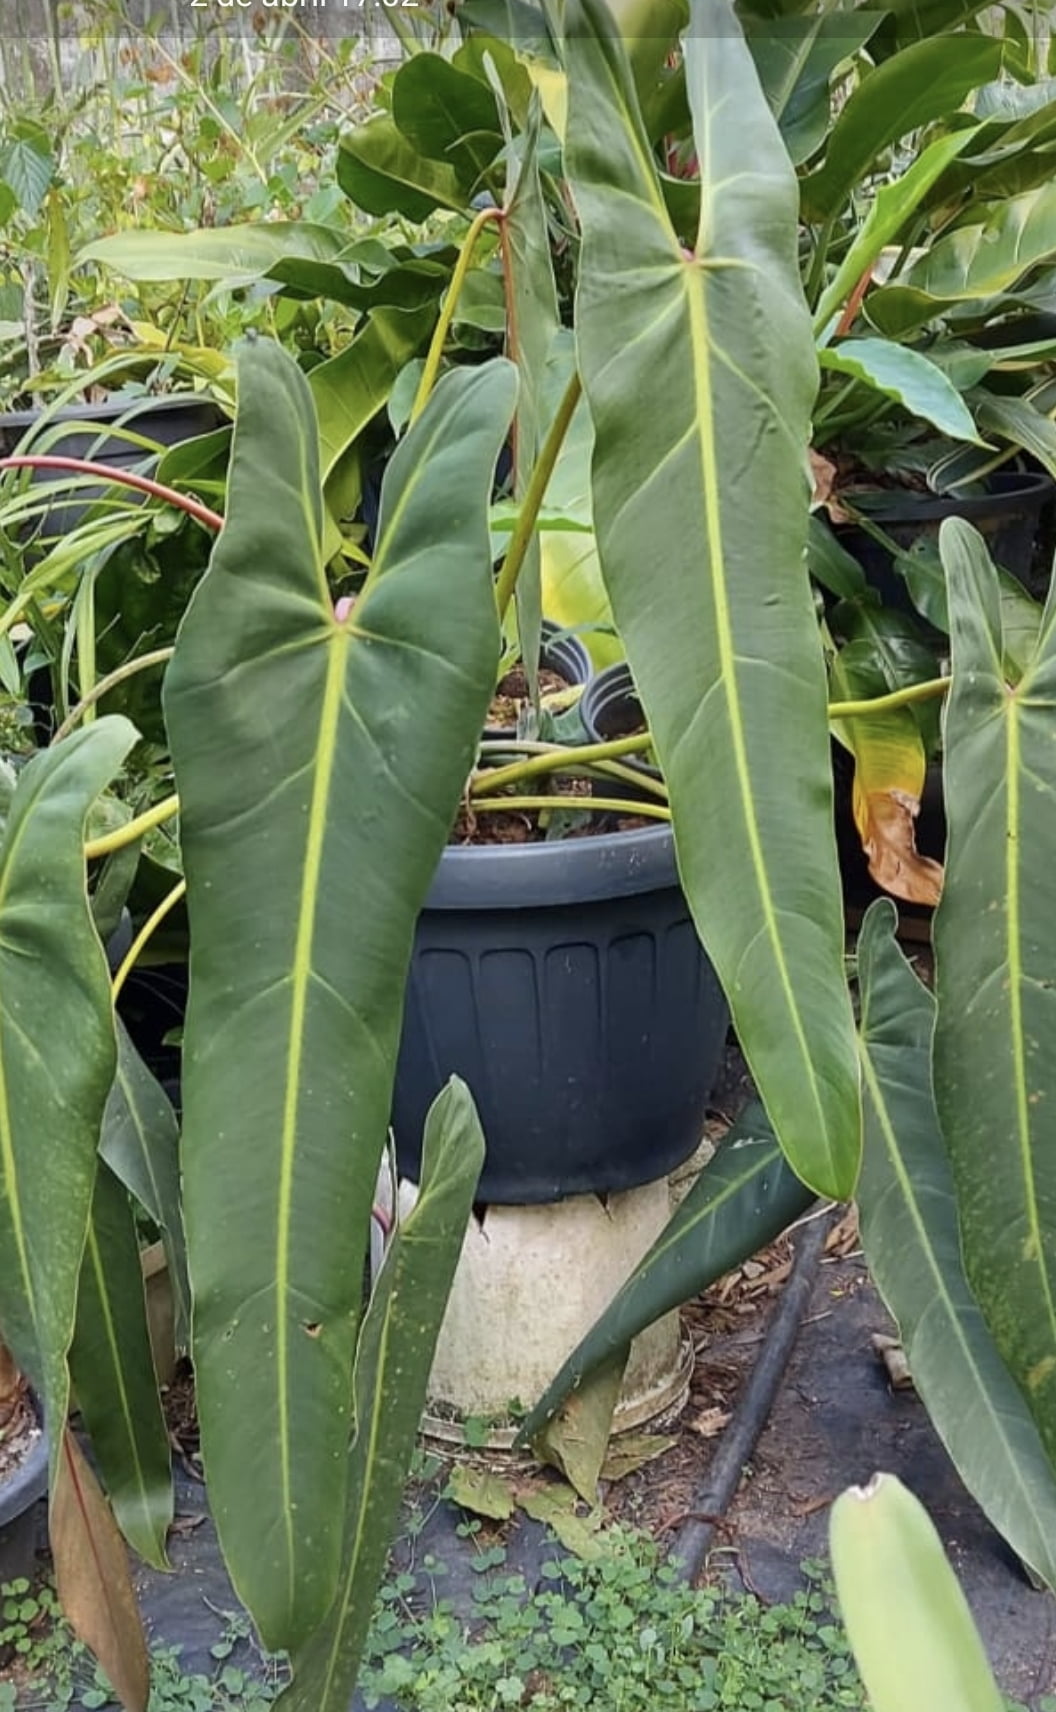 Philodendron spiritus-sancti